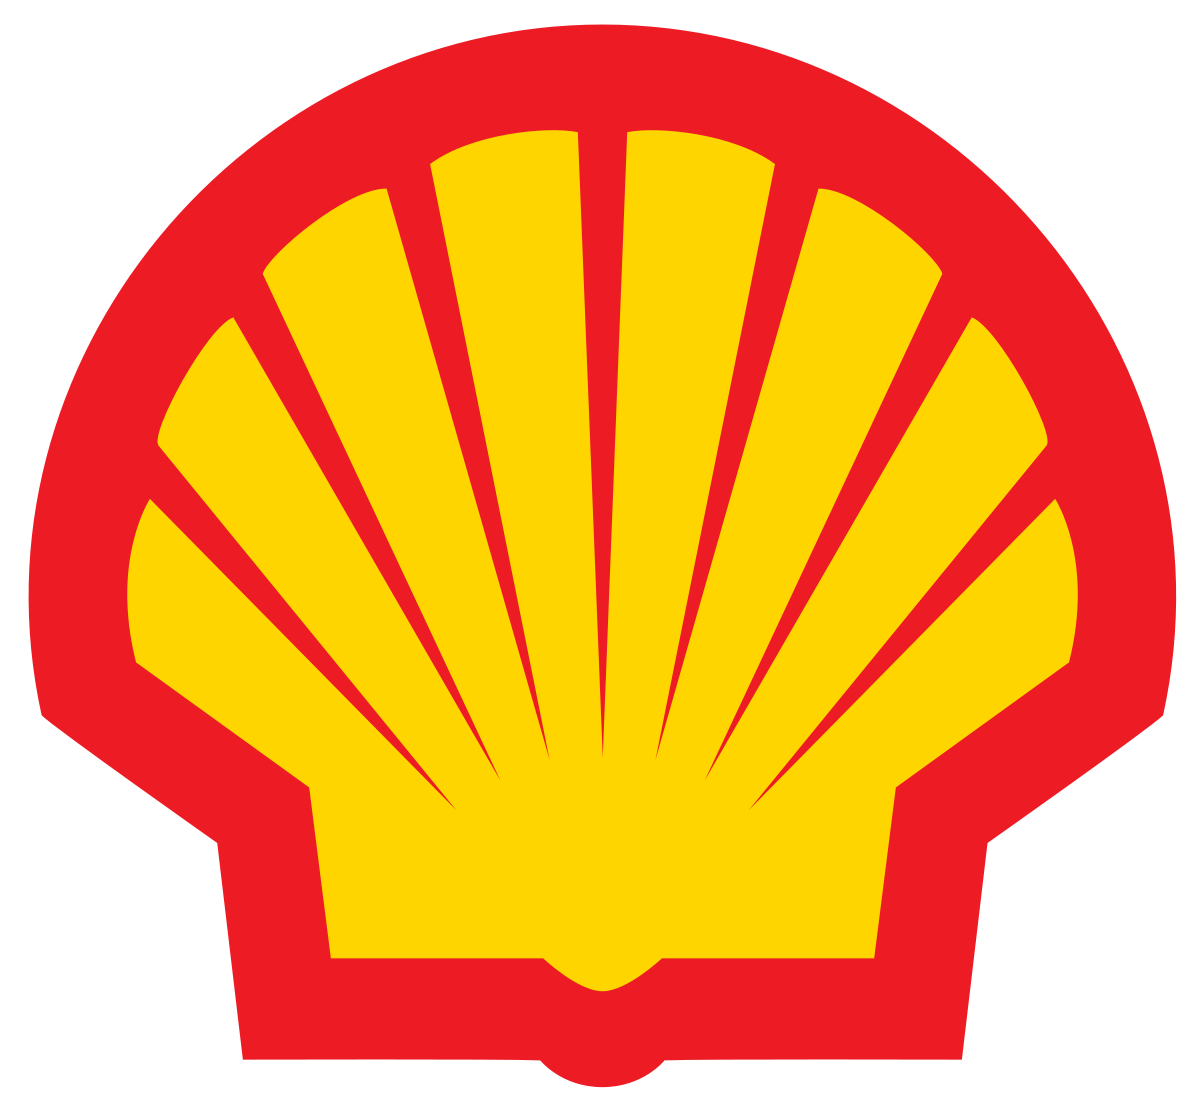 Shell Shipping